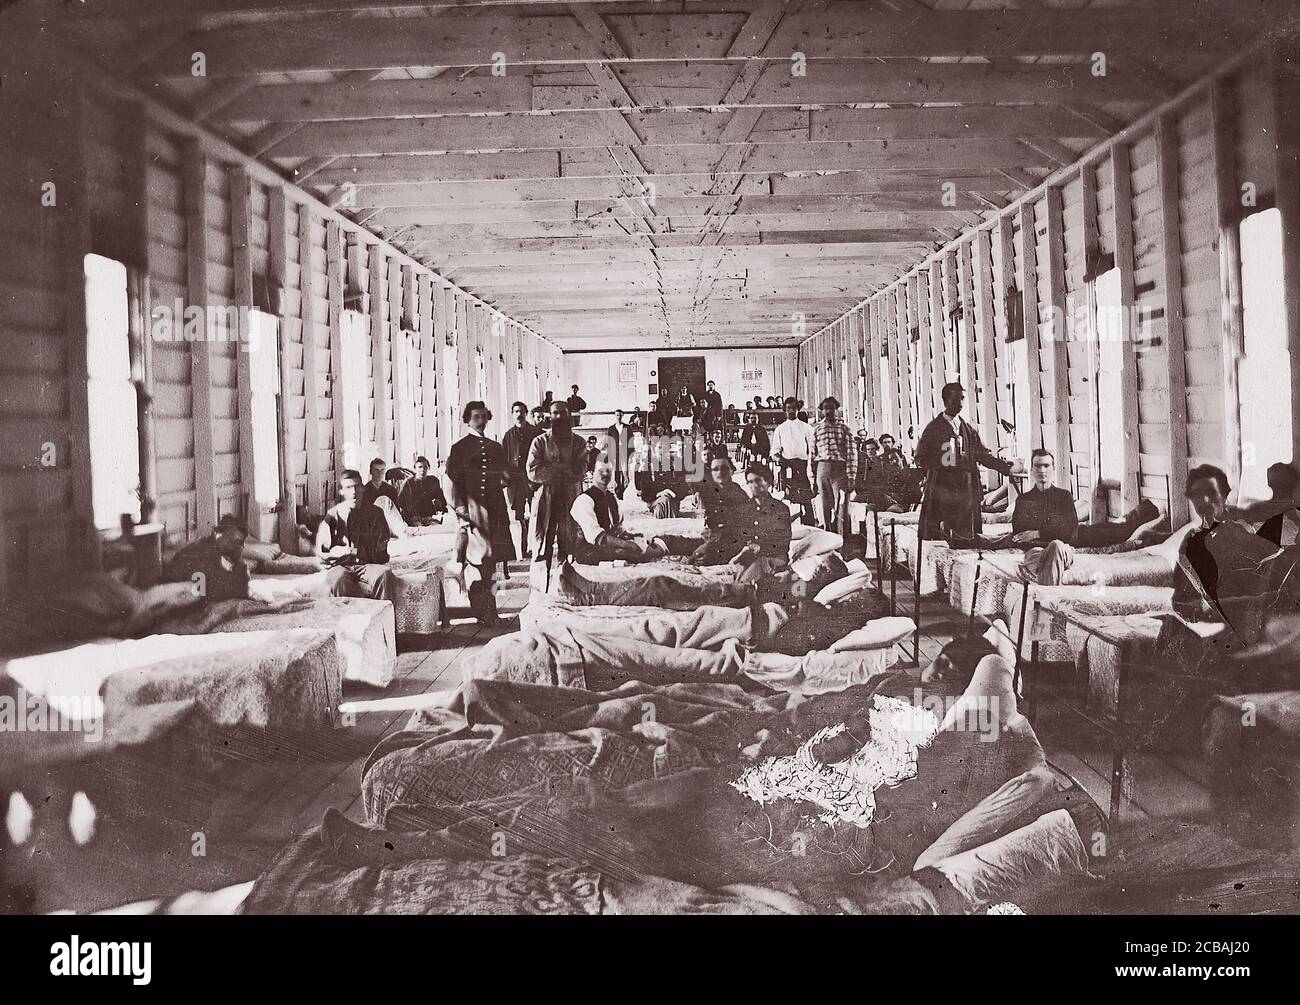 Station im Krankenhaus. Erholungslager, Alexandria Virginia, 1861-65. Früher Mathew B. Brady zugeschrieben. Stockfoto